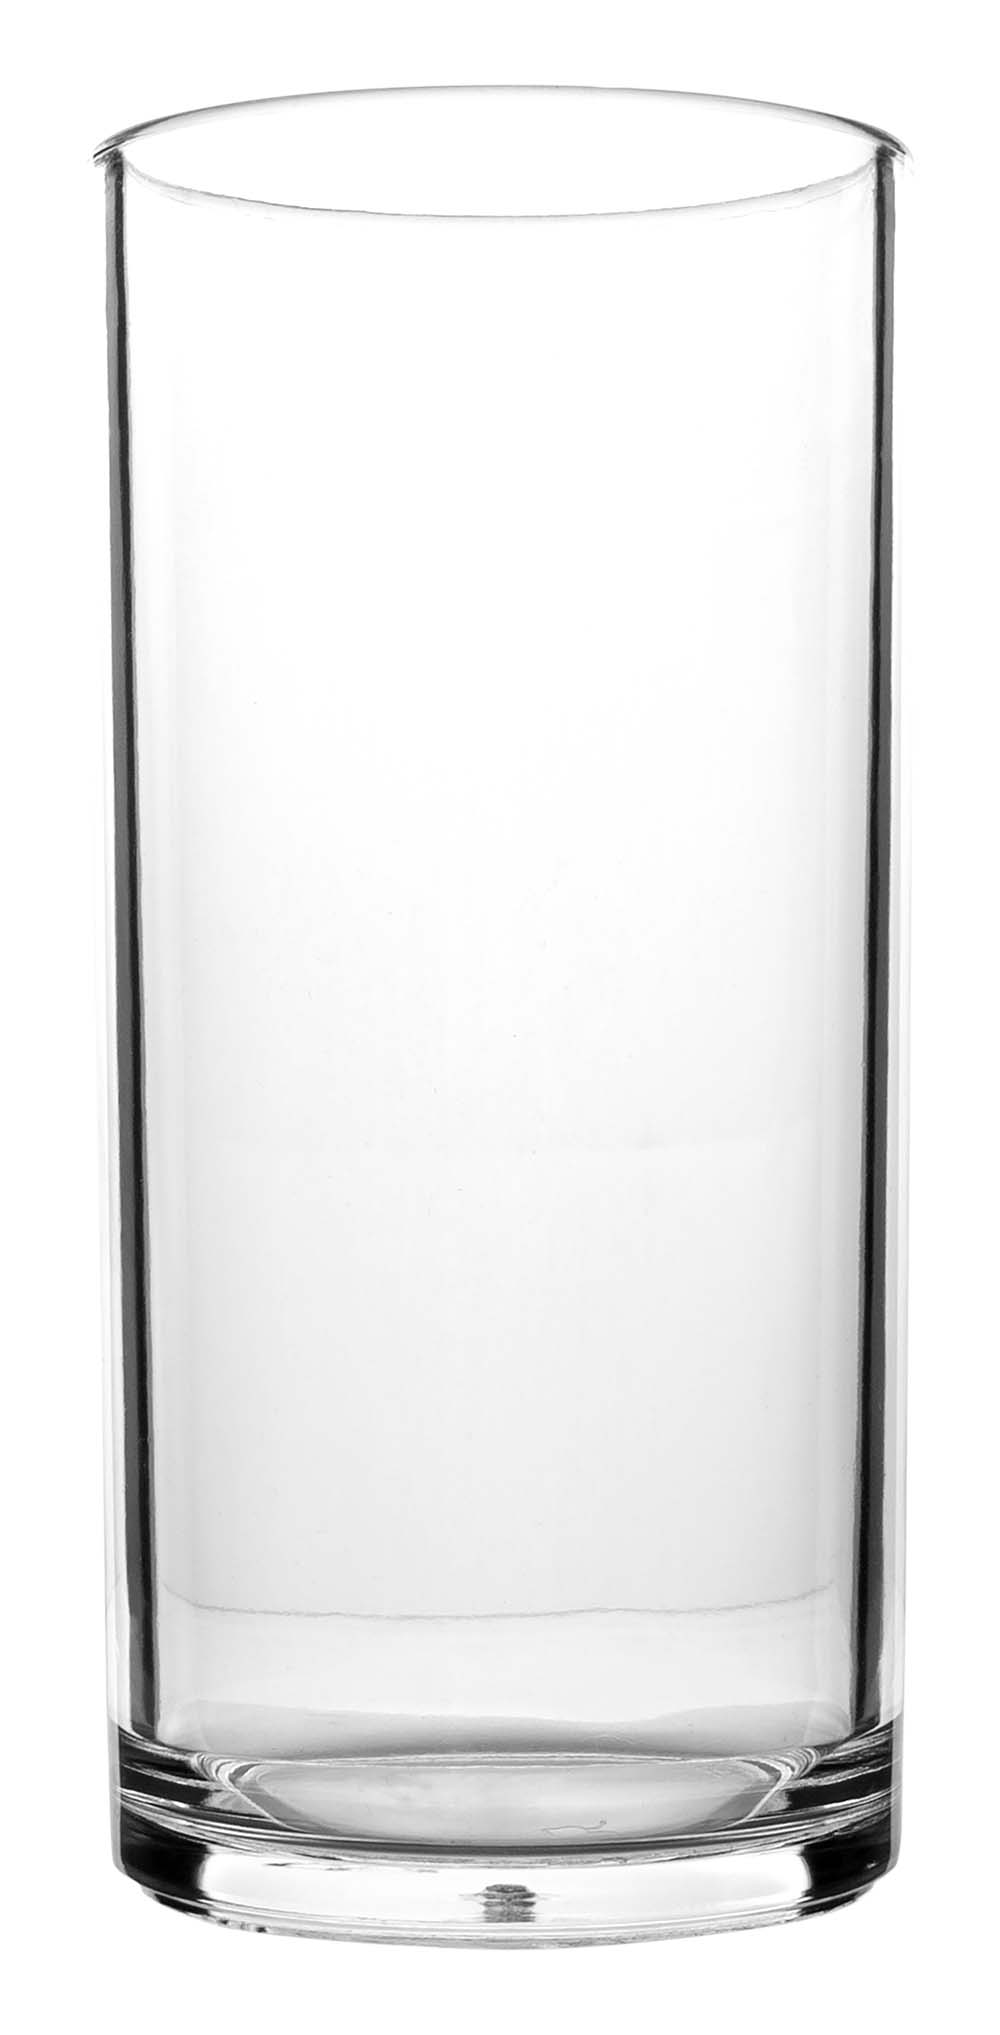 6101451 Een extra stevige en luxe set longdrink glazen. Gemaakt van 100% polycarbonaat. Hierdoor zijn deze glazen vrijwel onbreekbaar, lichtgewicht en kraswerend. Ook zijn deze glazen vaatwasmachinebestendig. Per 2 stuks verpakt.